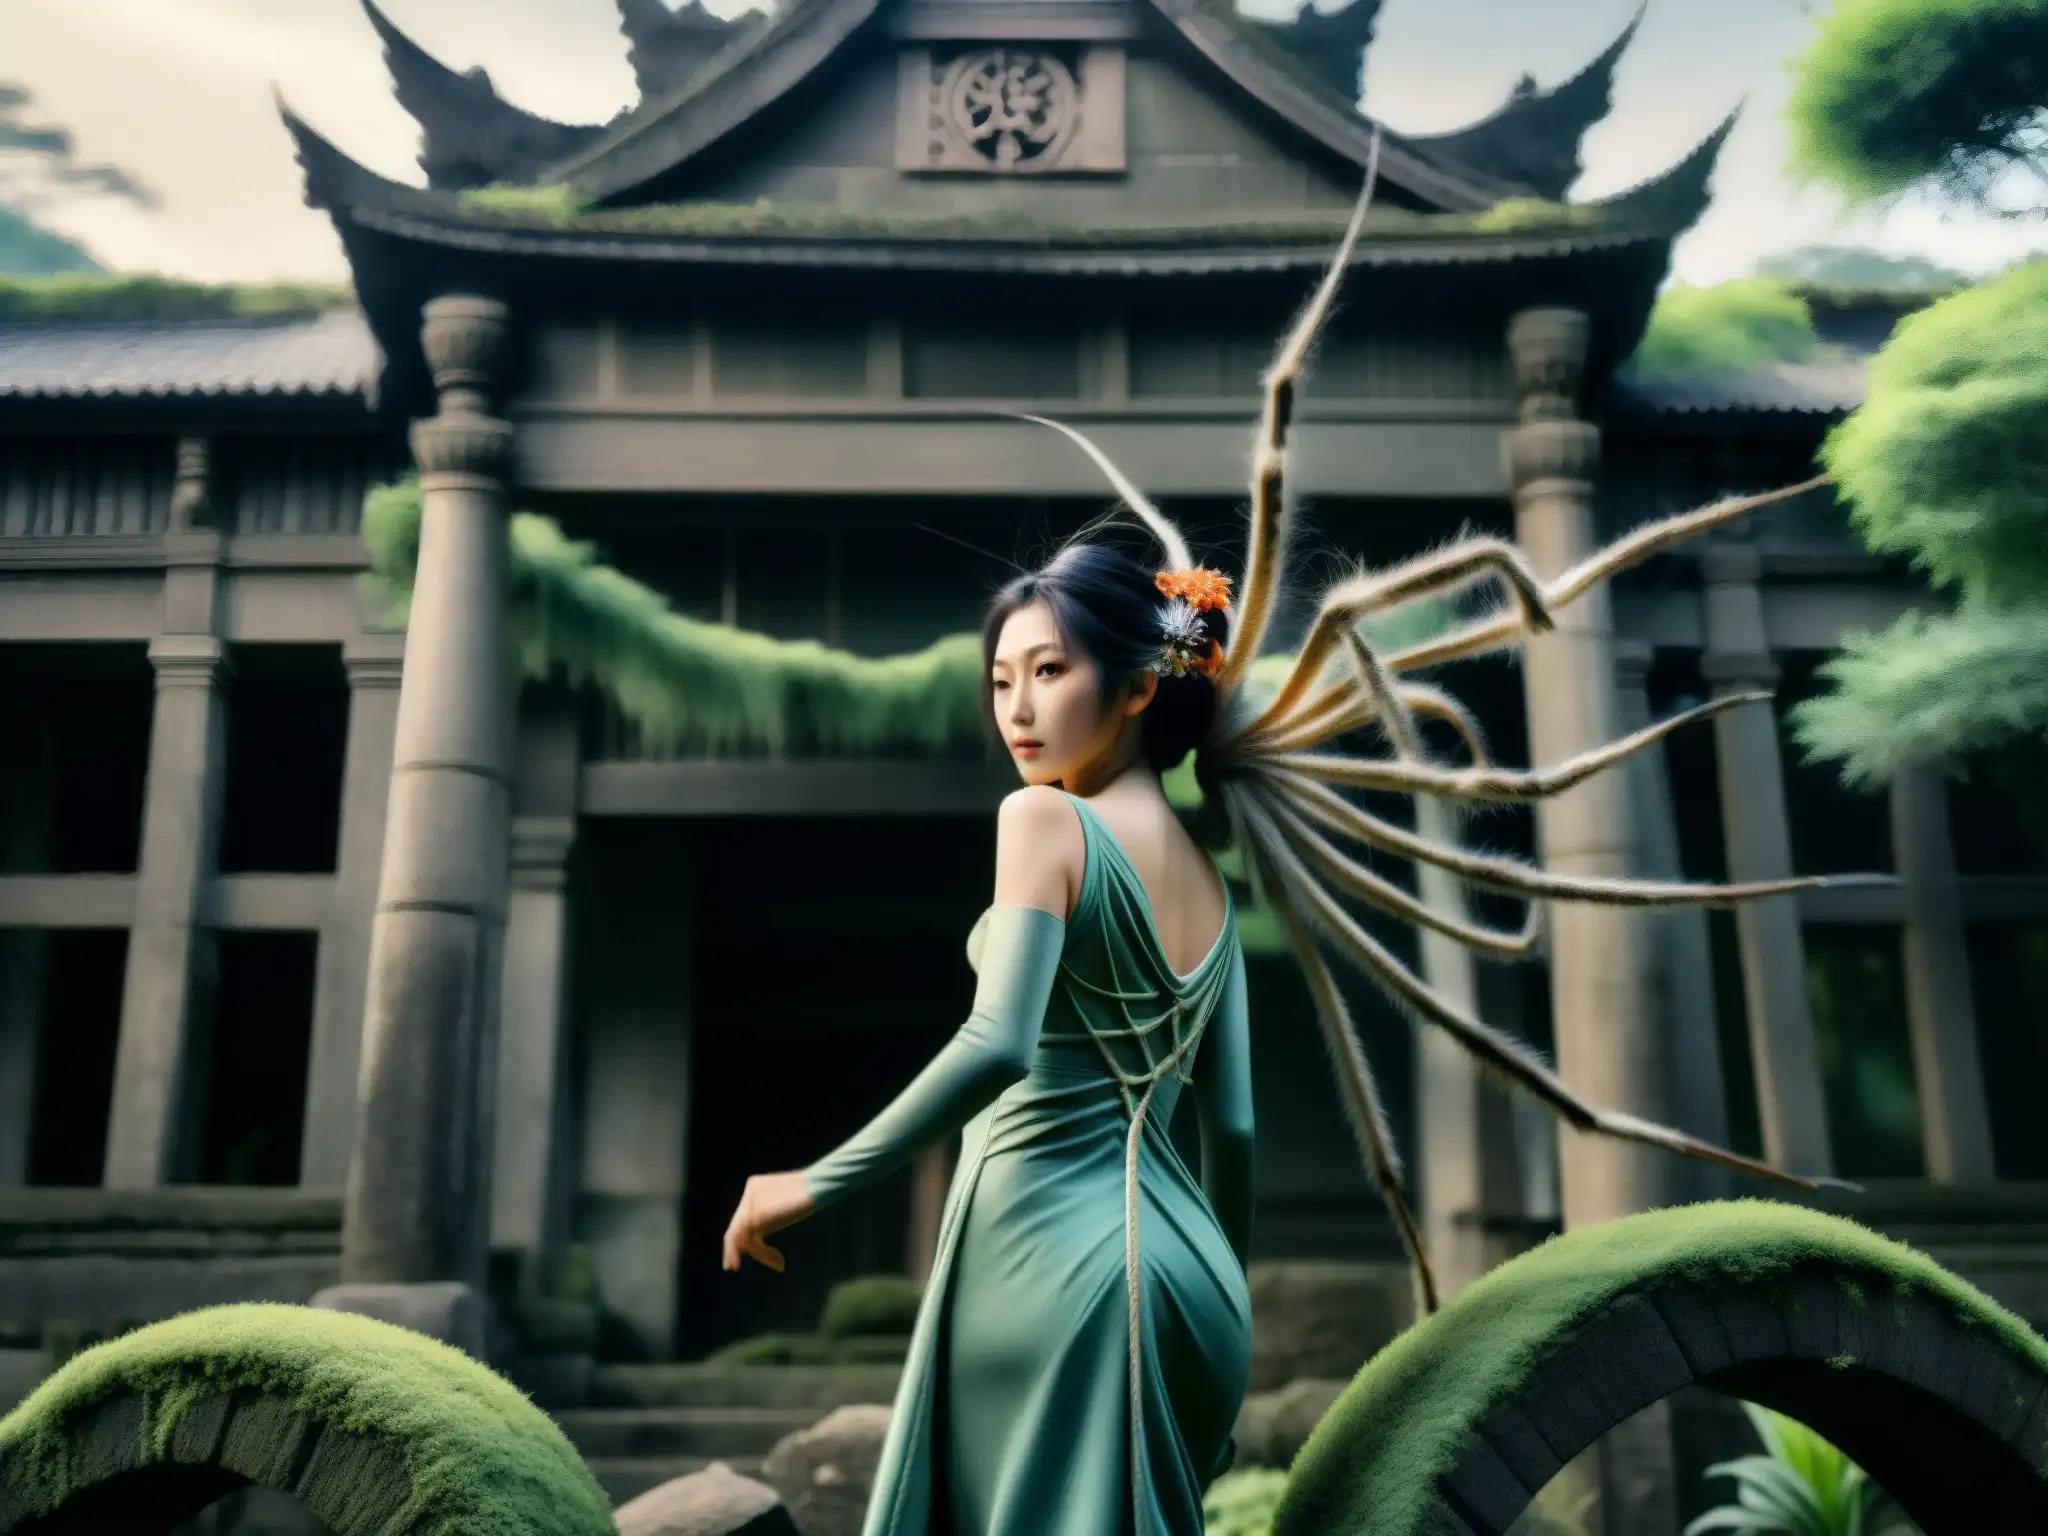 Imagen de la legendaria Jorogumo, una araña mujer de Japón, con una presencia mística y malevolente, en ruinas antiguas y exuberantes